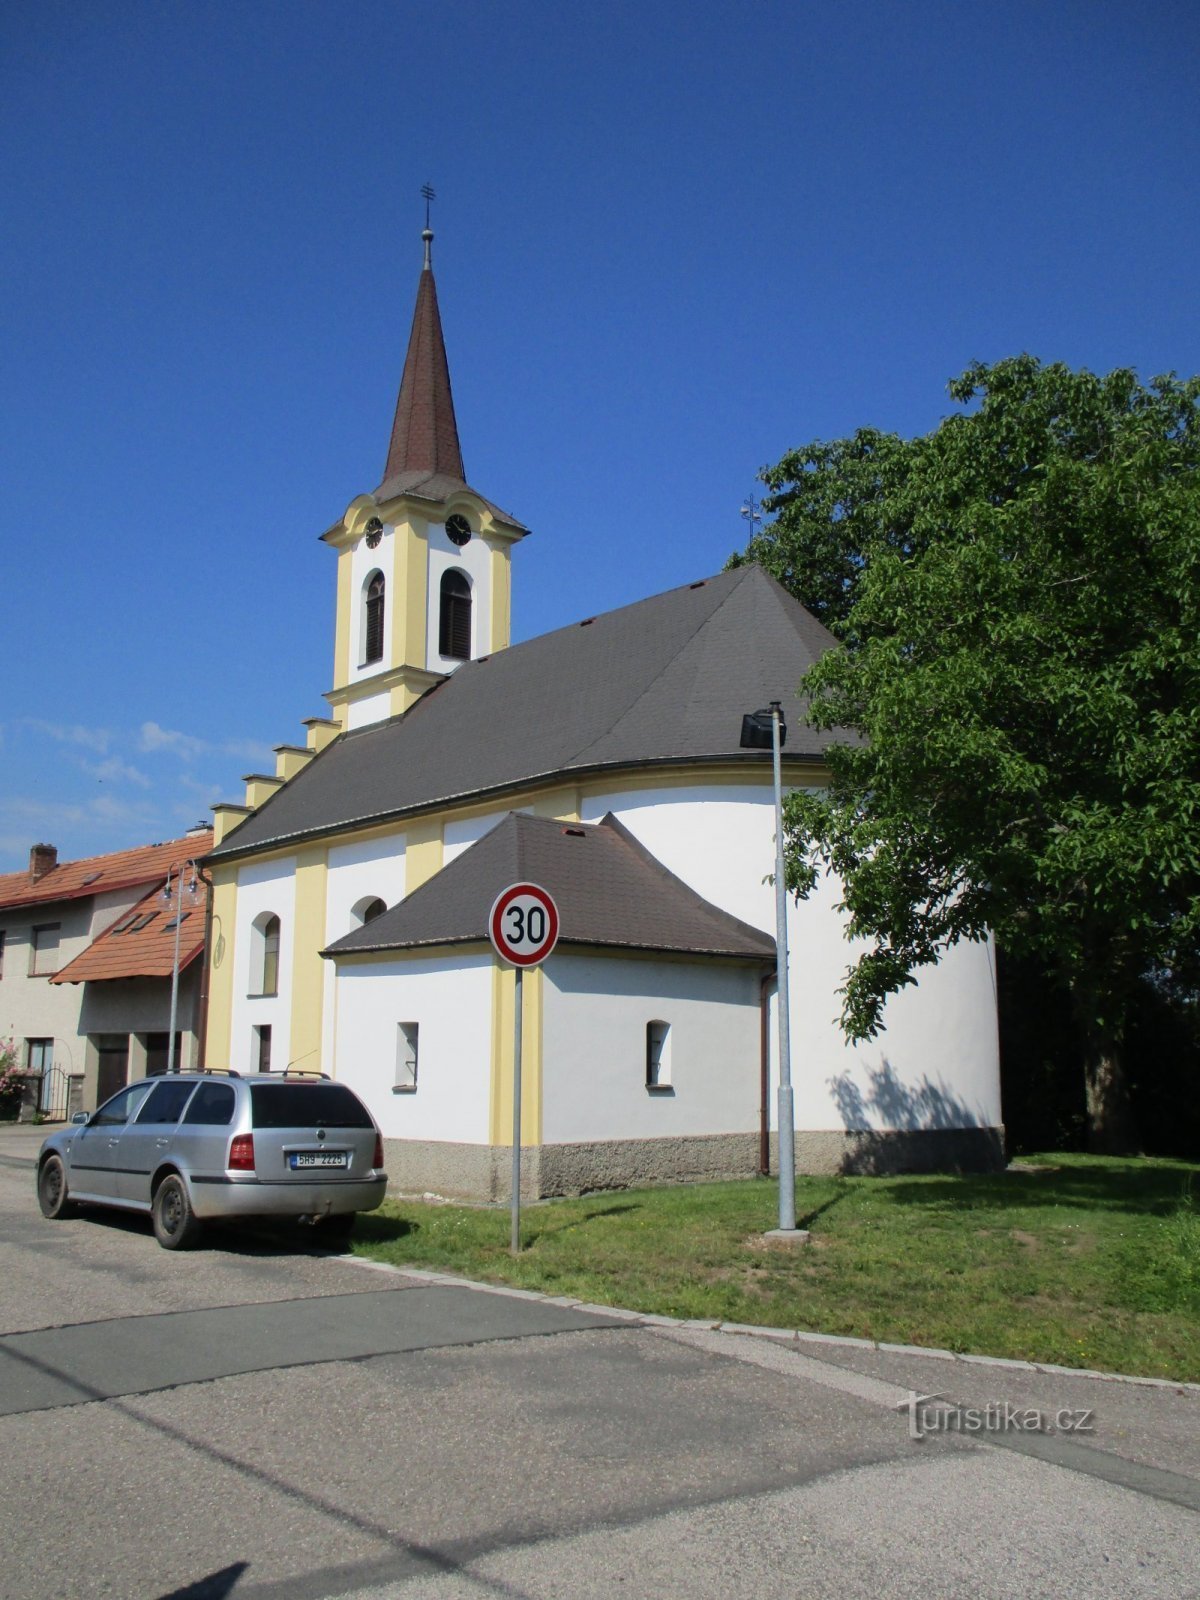 Церковь св. Семьи (Нагоржаны)